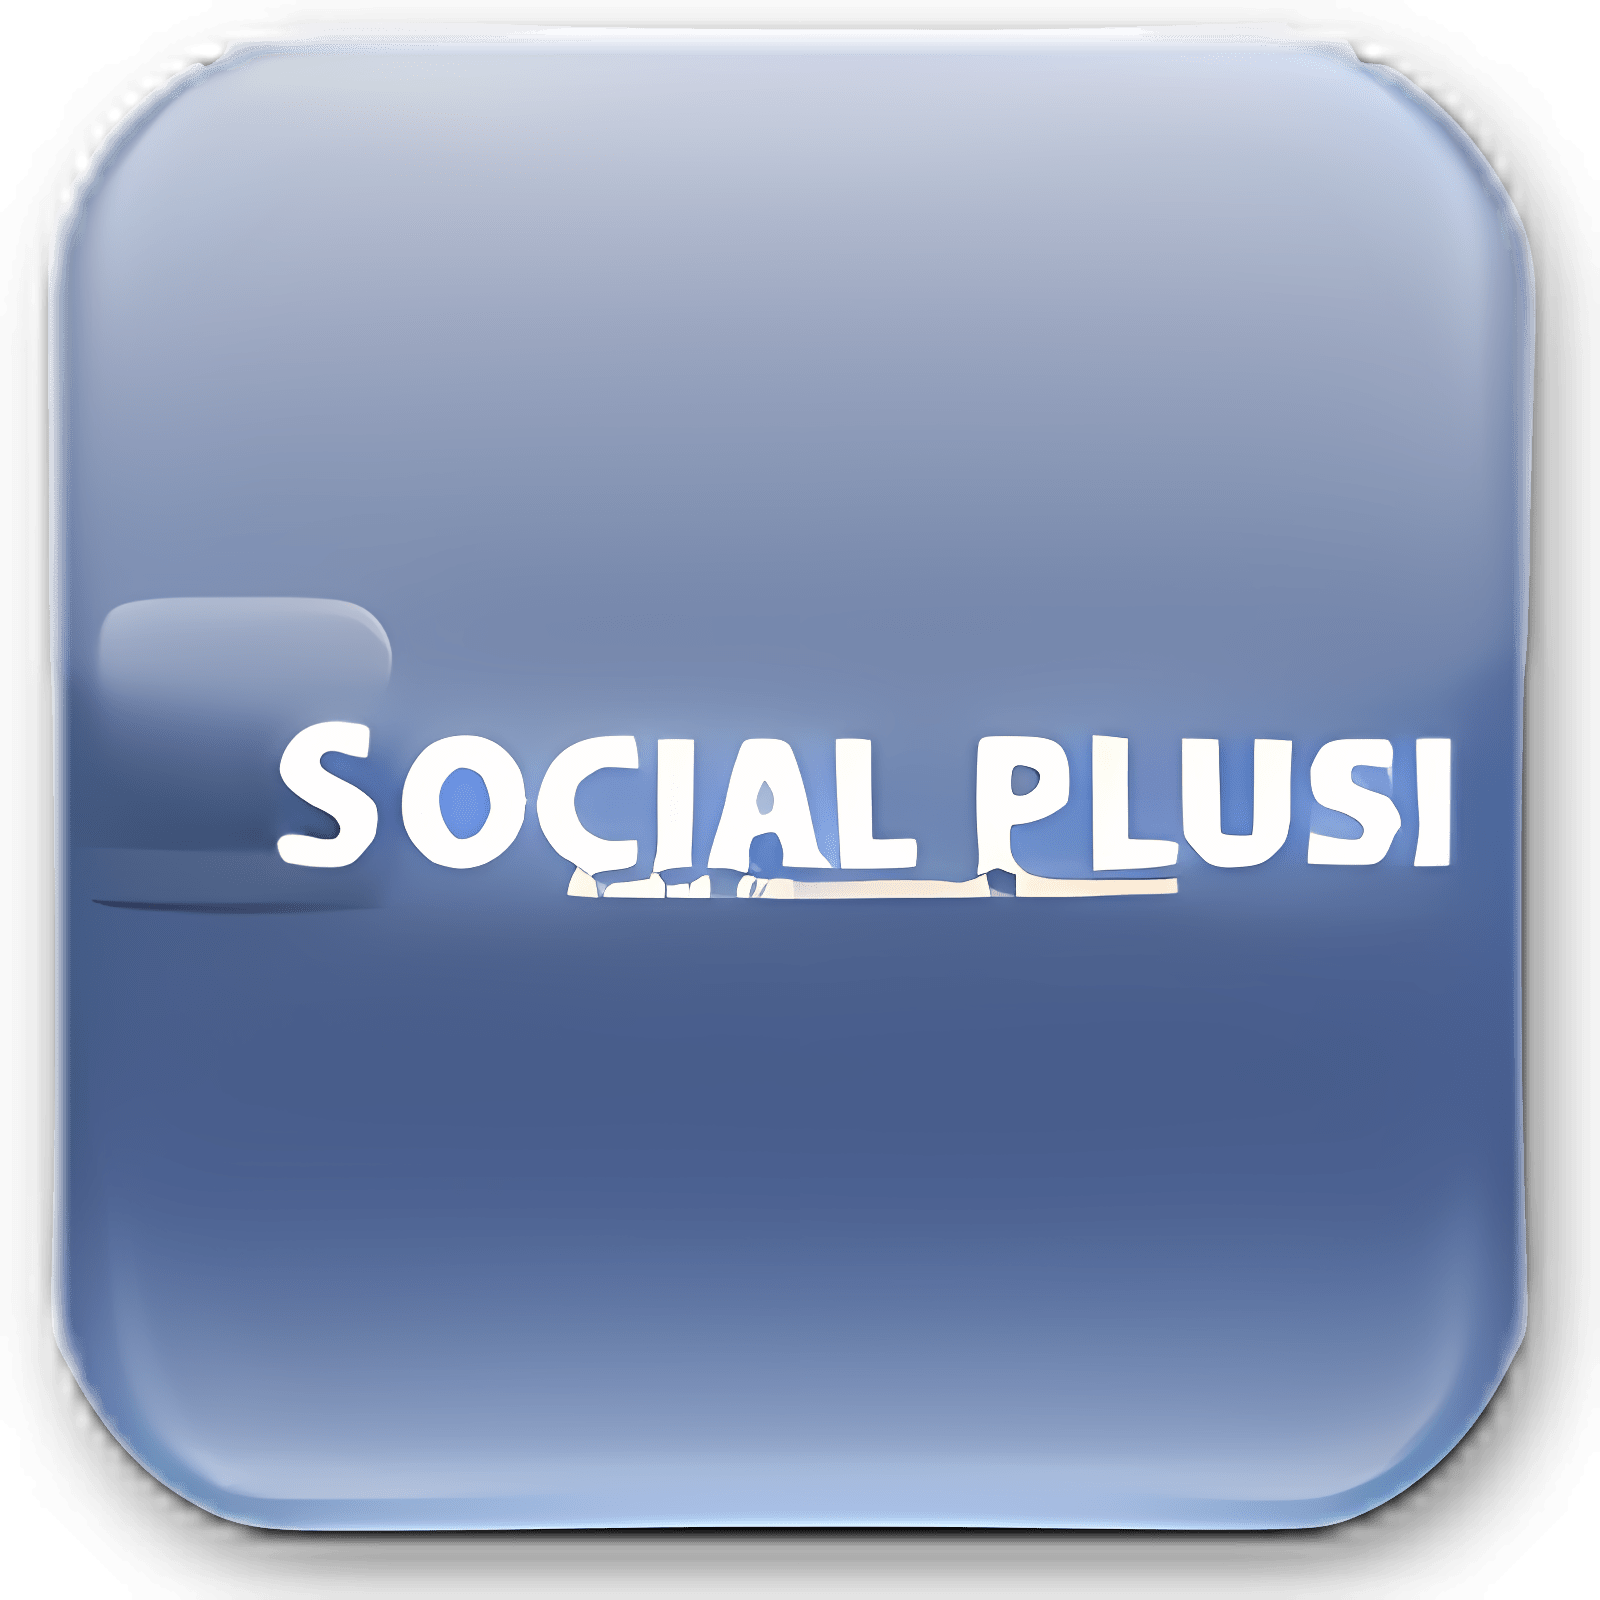 Télécharger Social Plus! Installaller Dernier appli téléchargeur